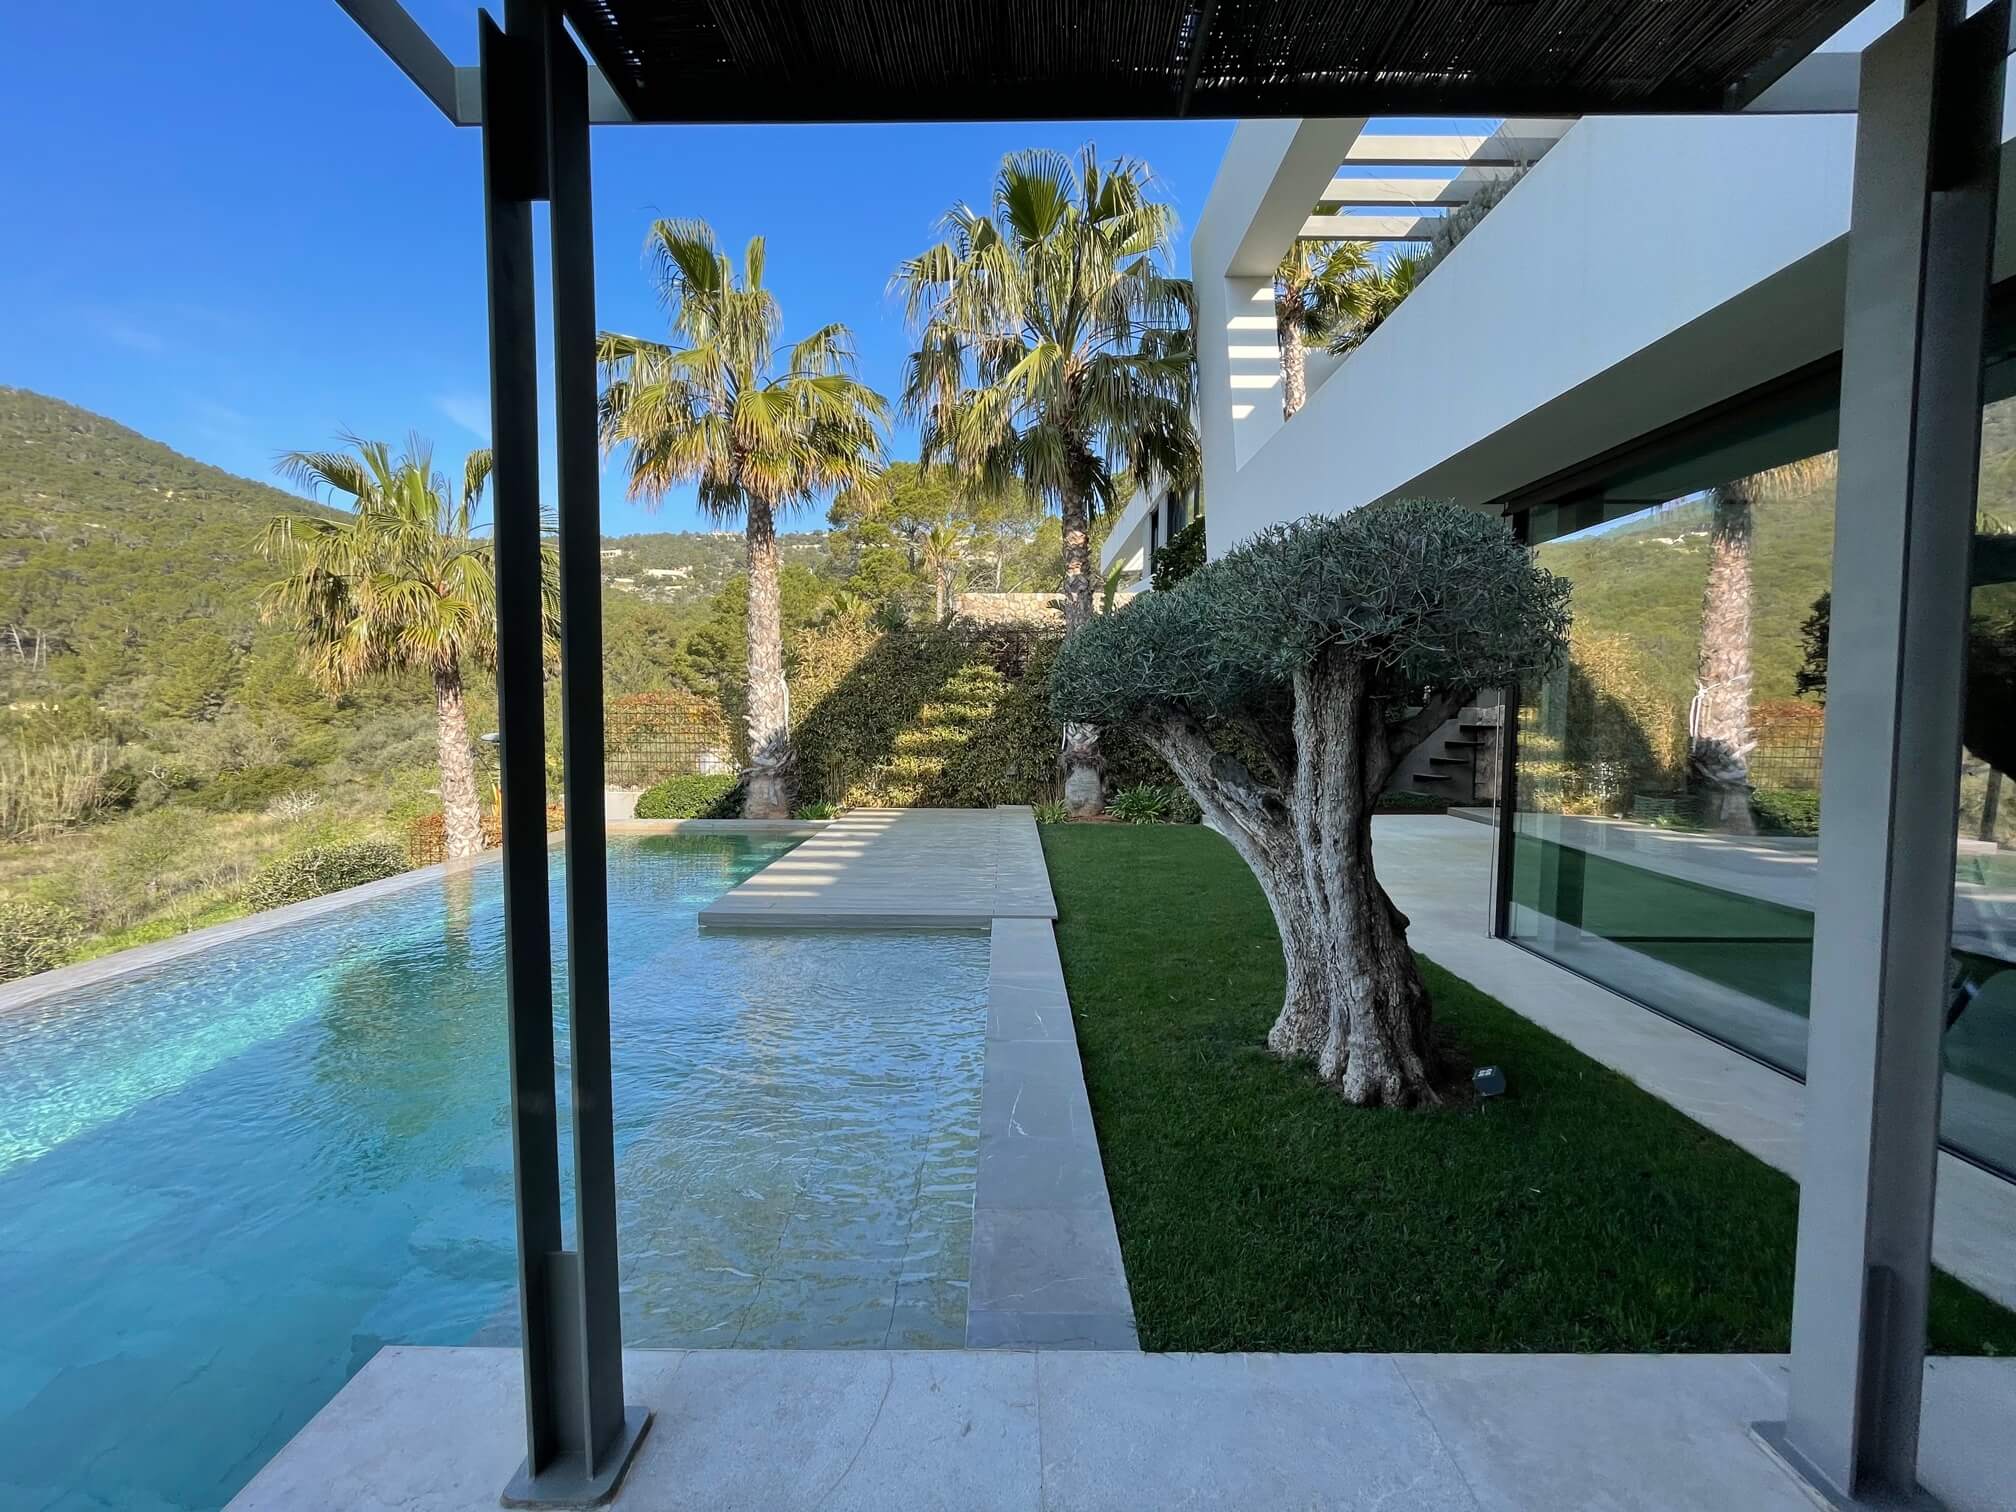 Jardín con piscina, palmeras y un olivo podado en Mallorca